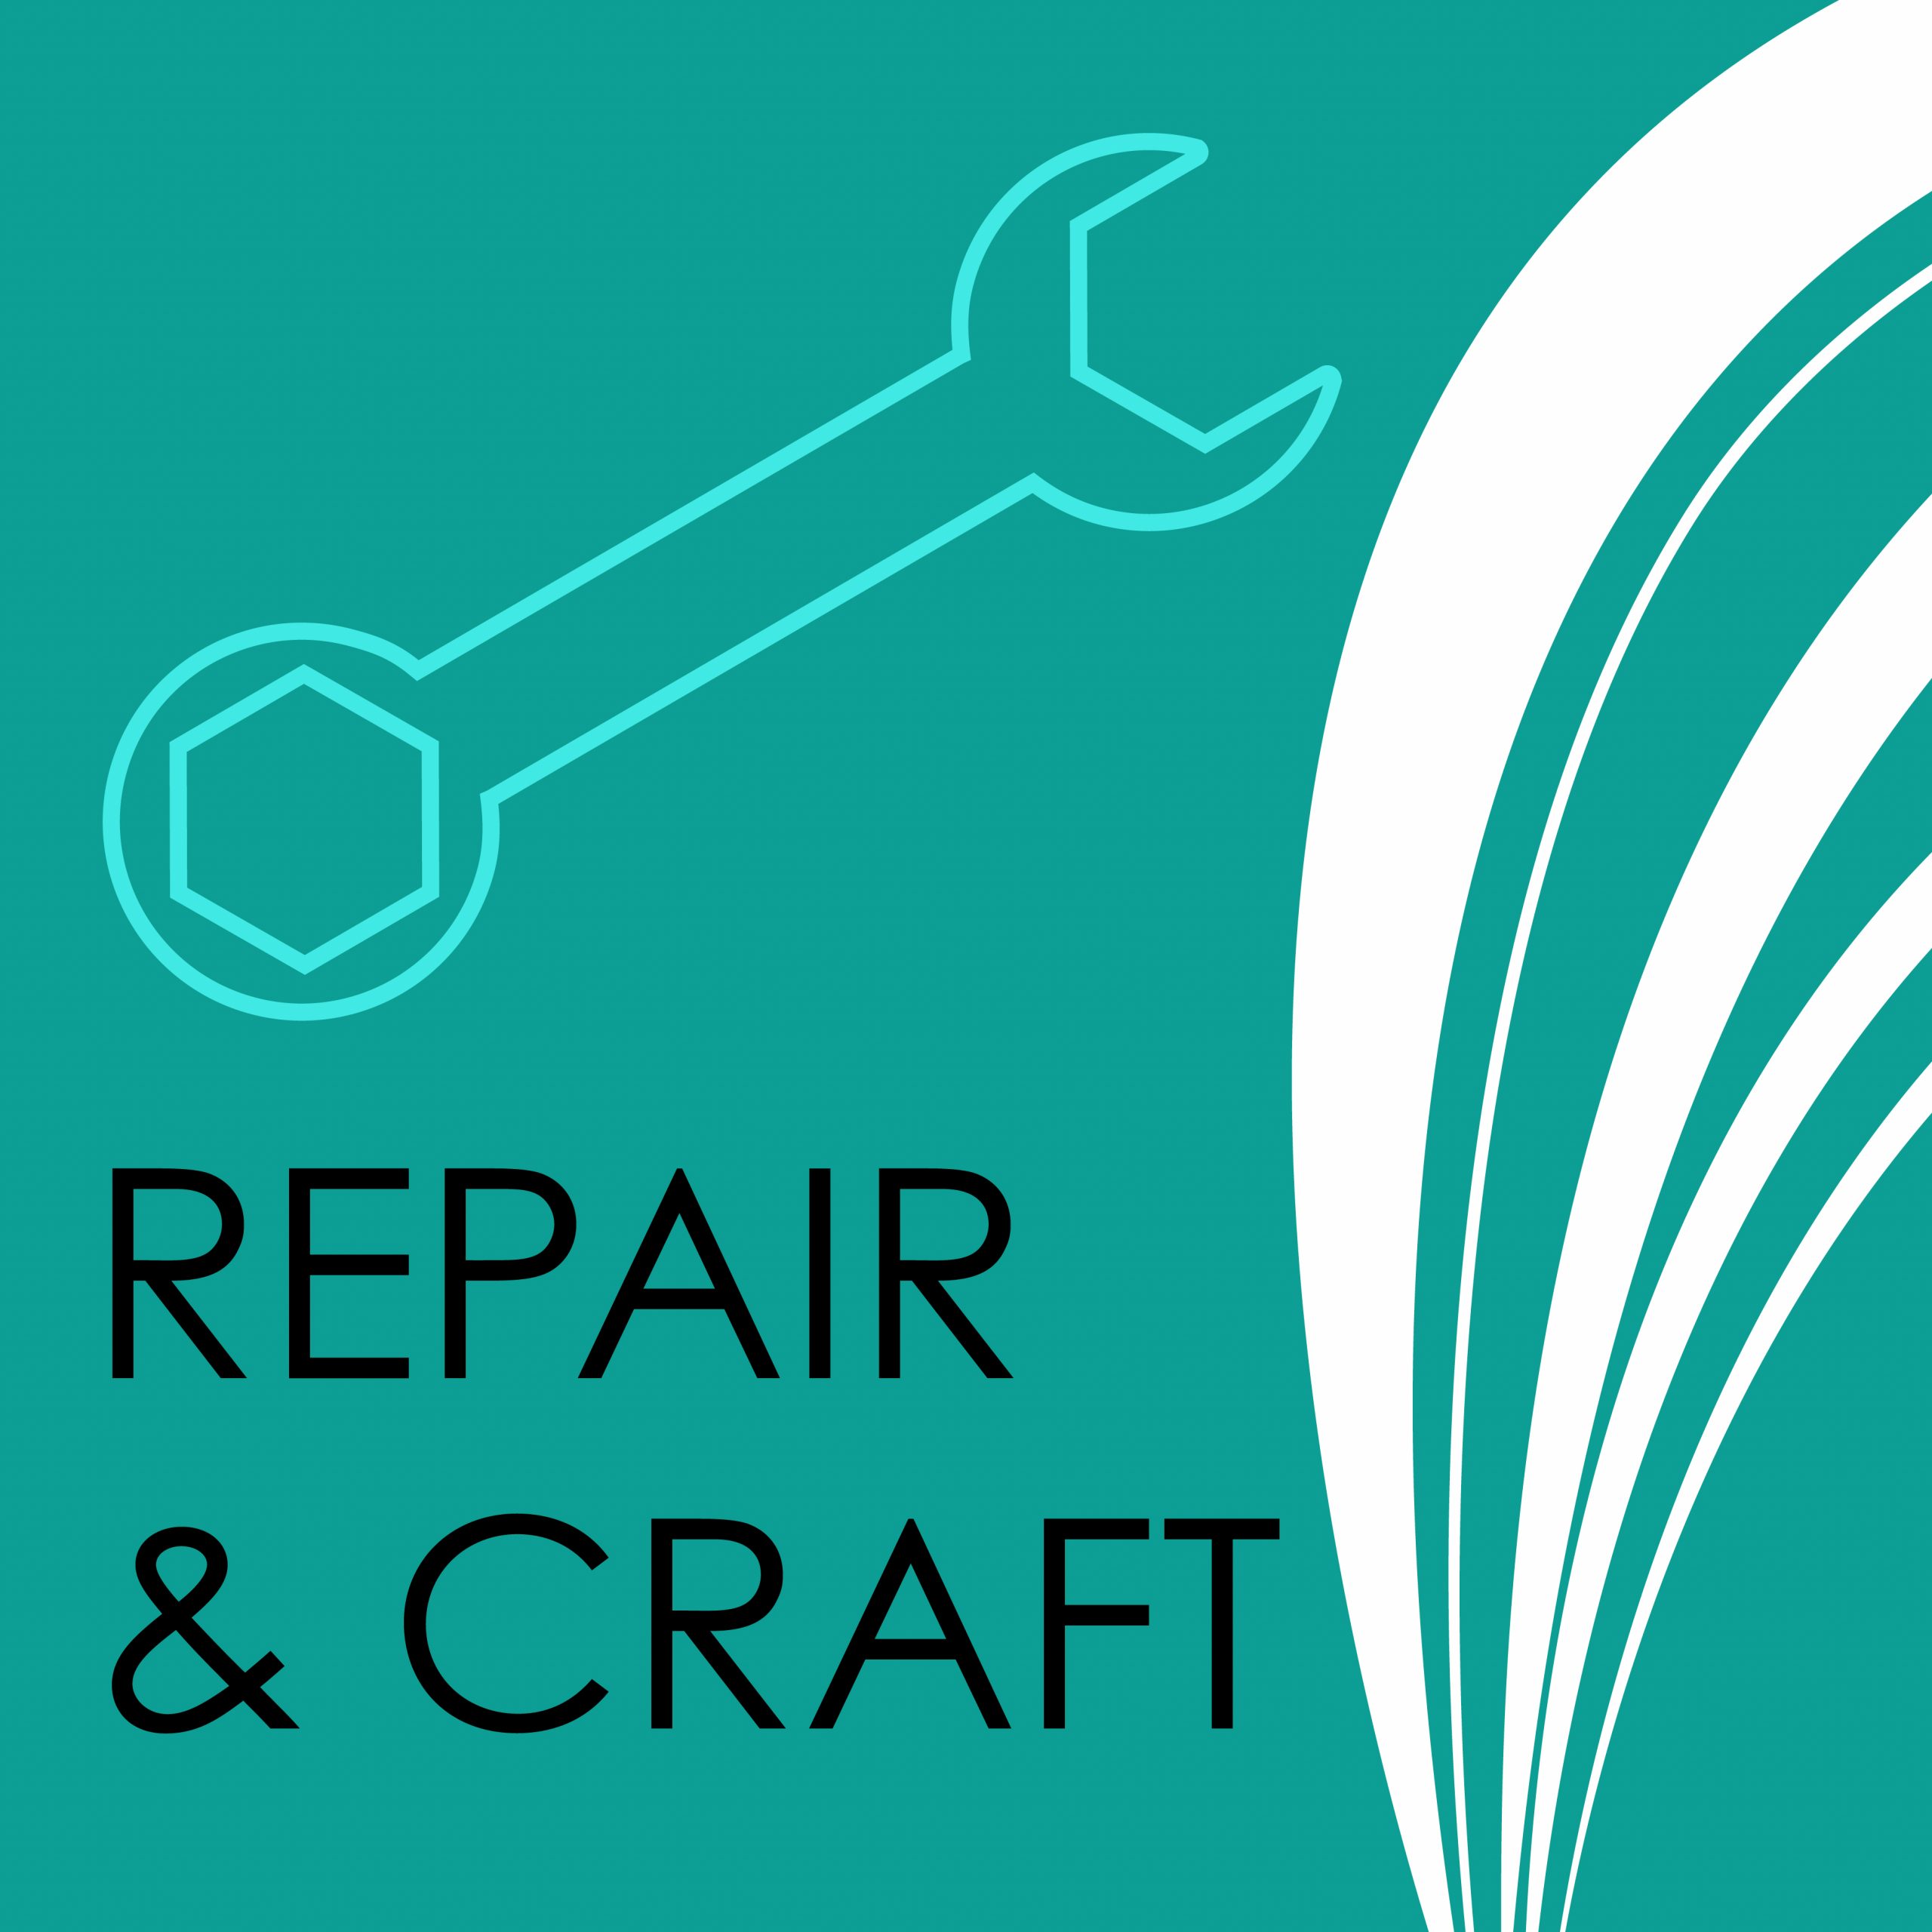 Repair and craft